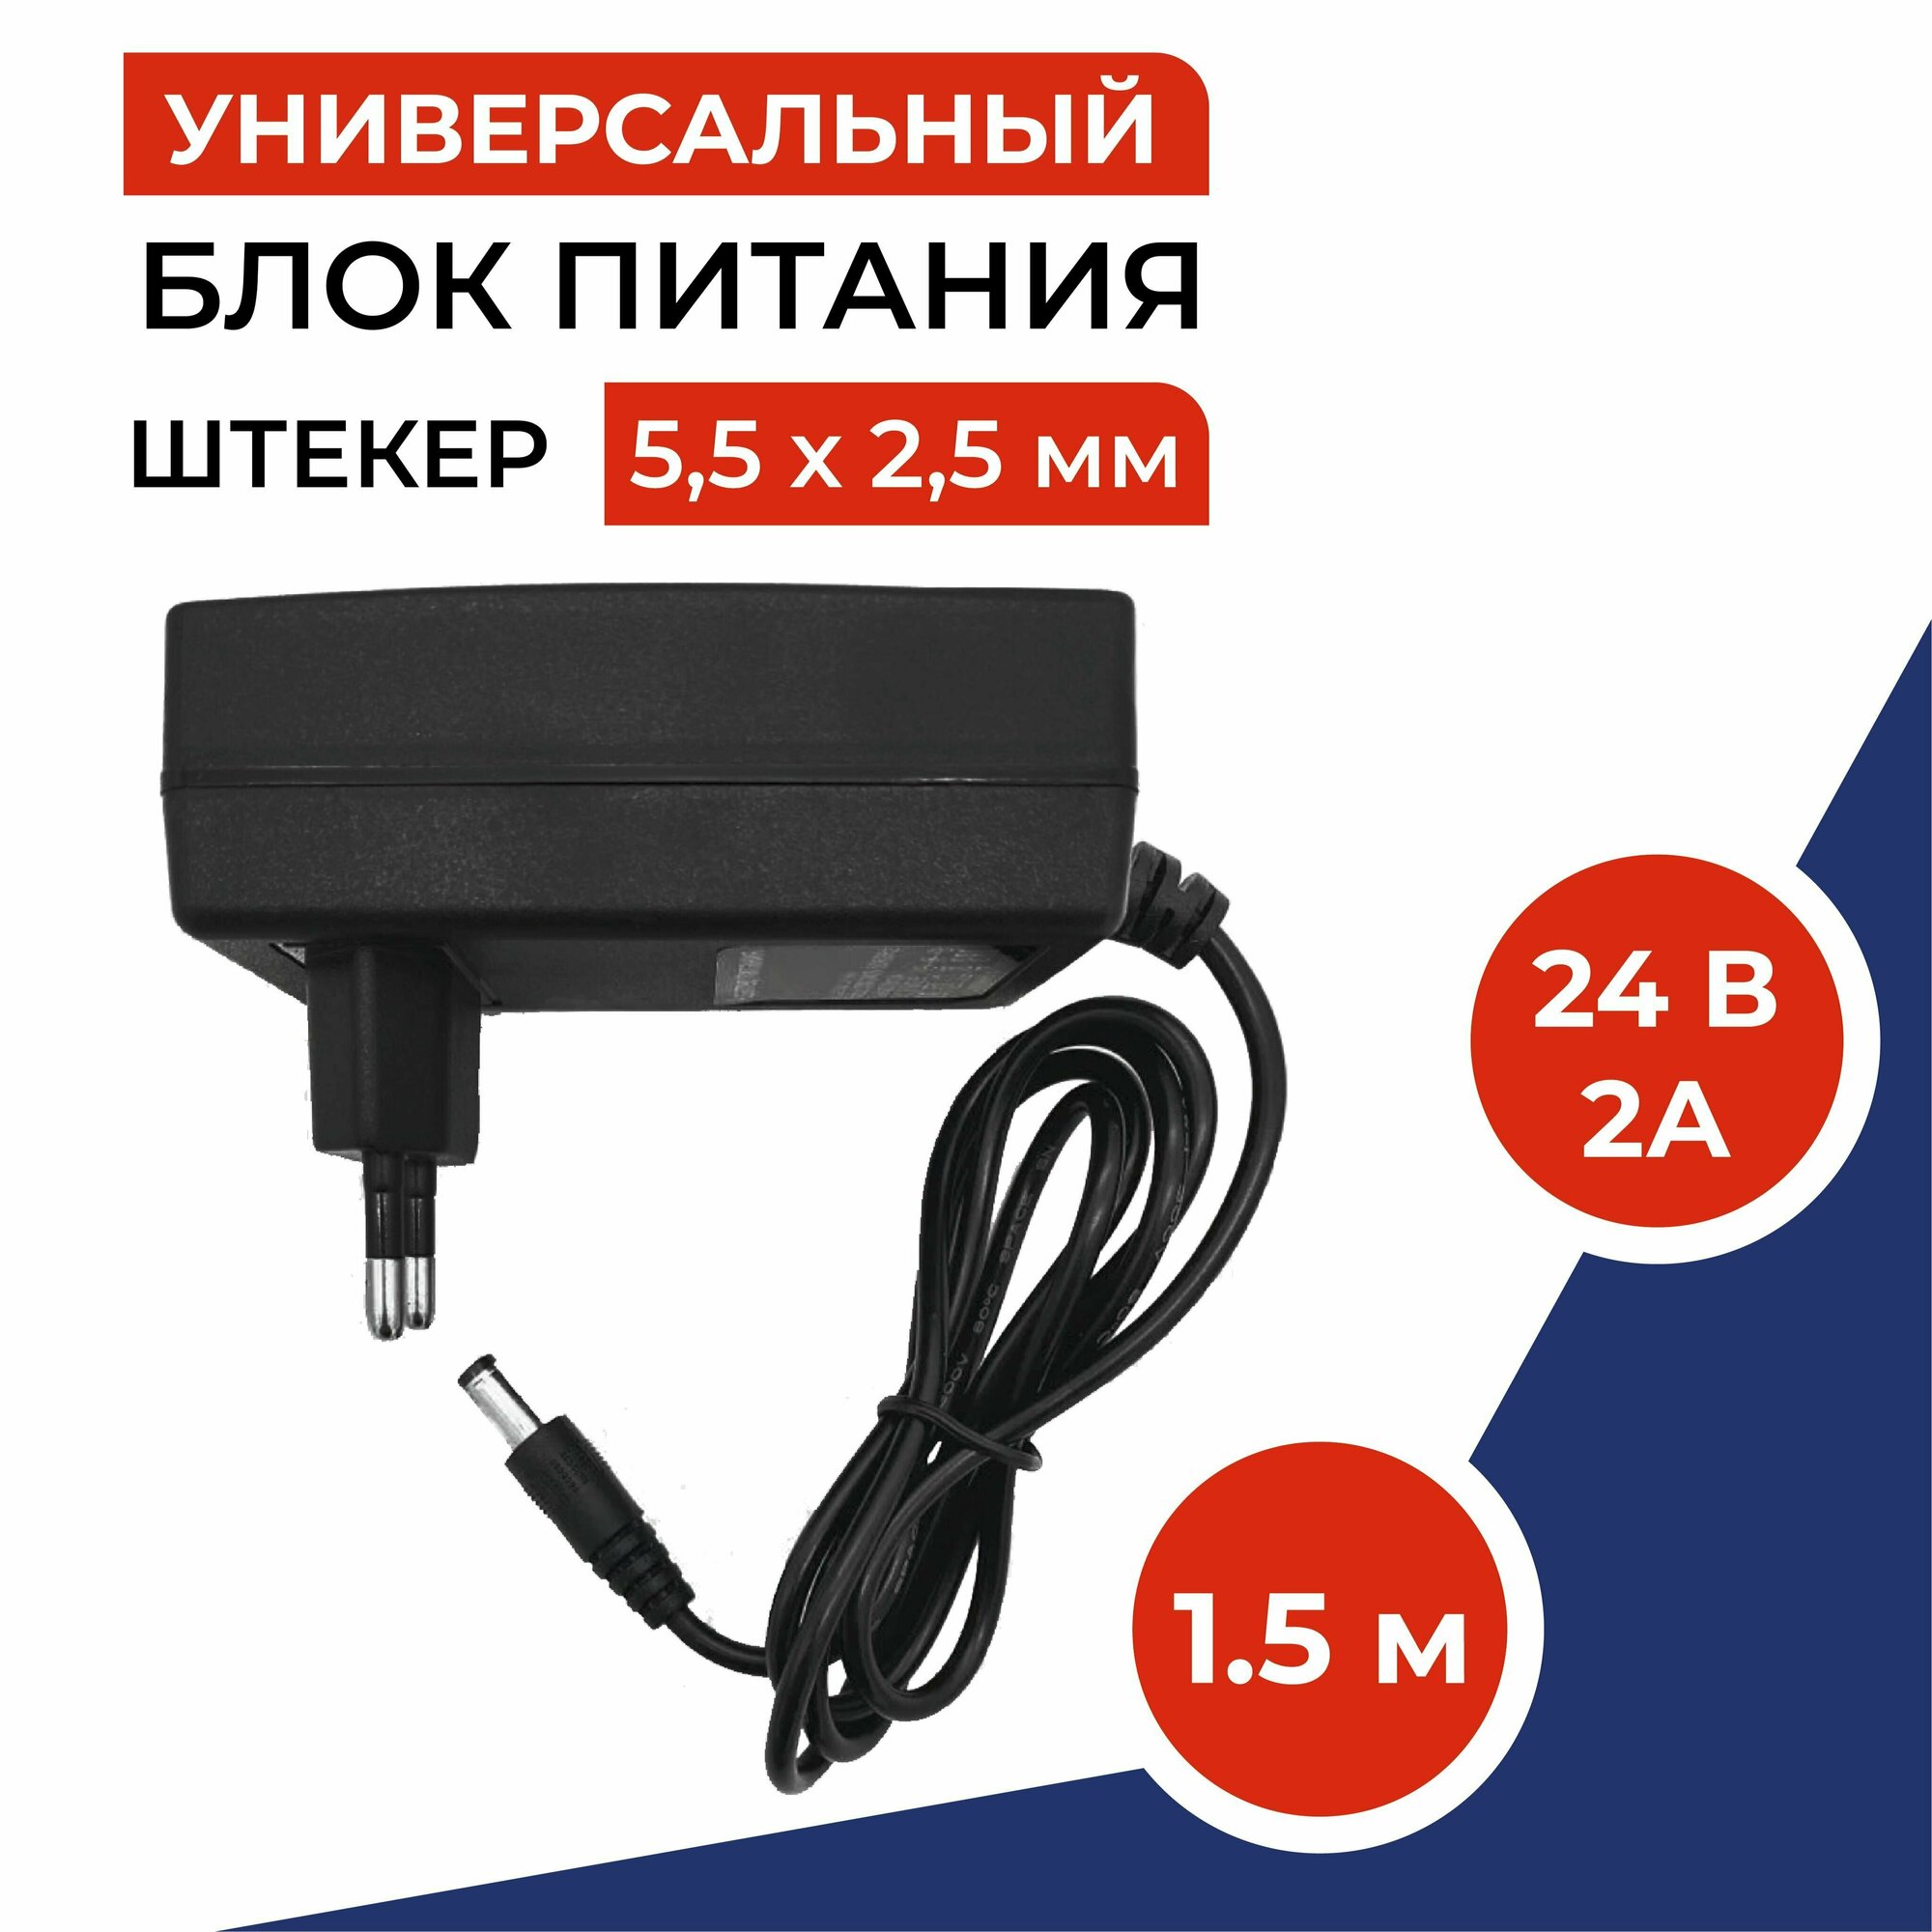 Универсальный блок питания 24V 2A (24В 2А) (штекер 55 x 25мм) для TV приставок камер видеонаблюдения светодиодных лент